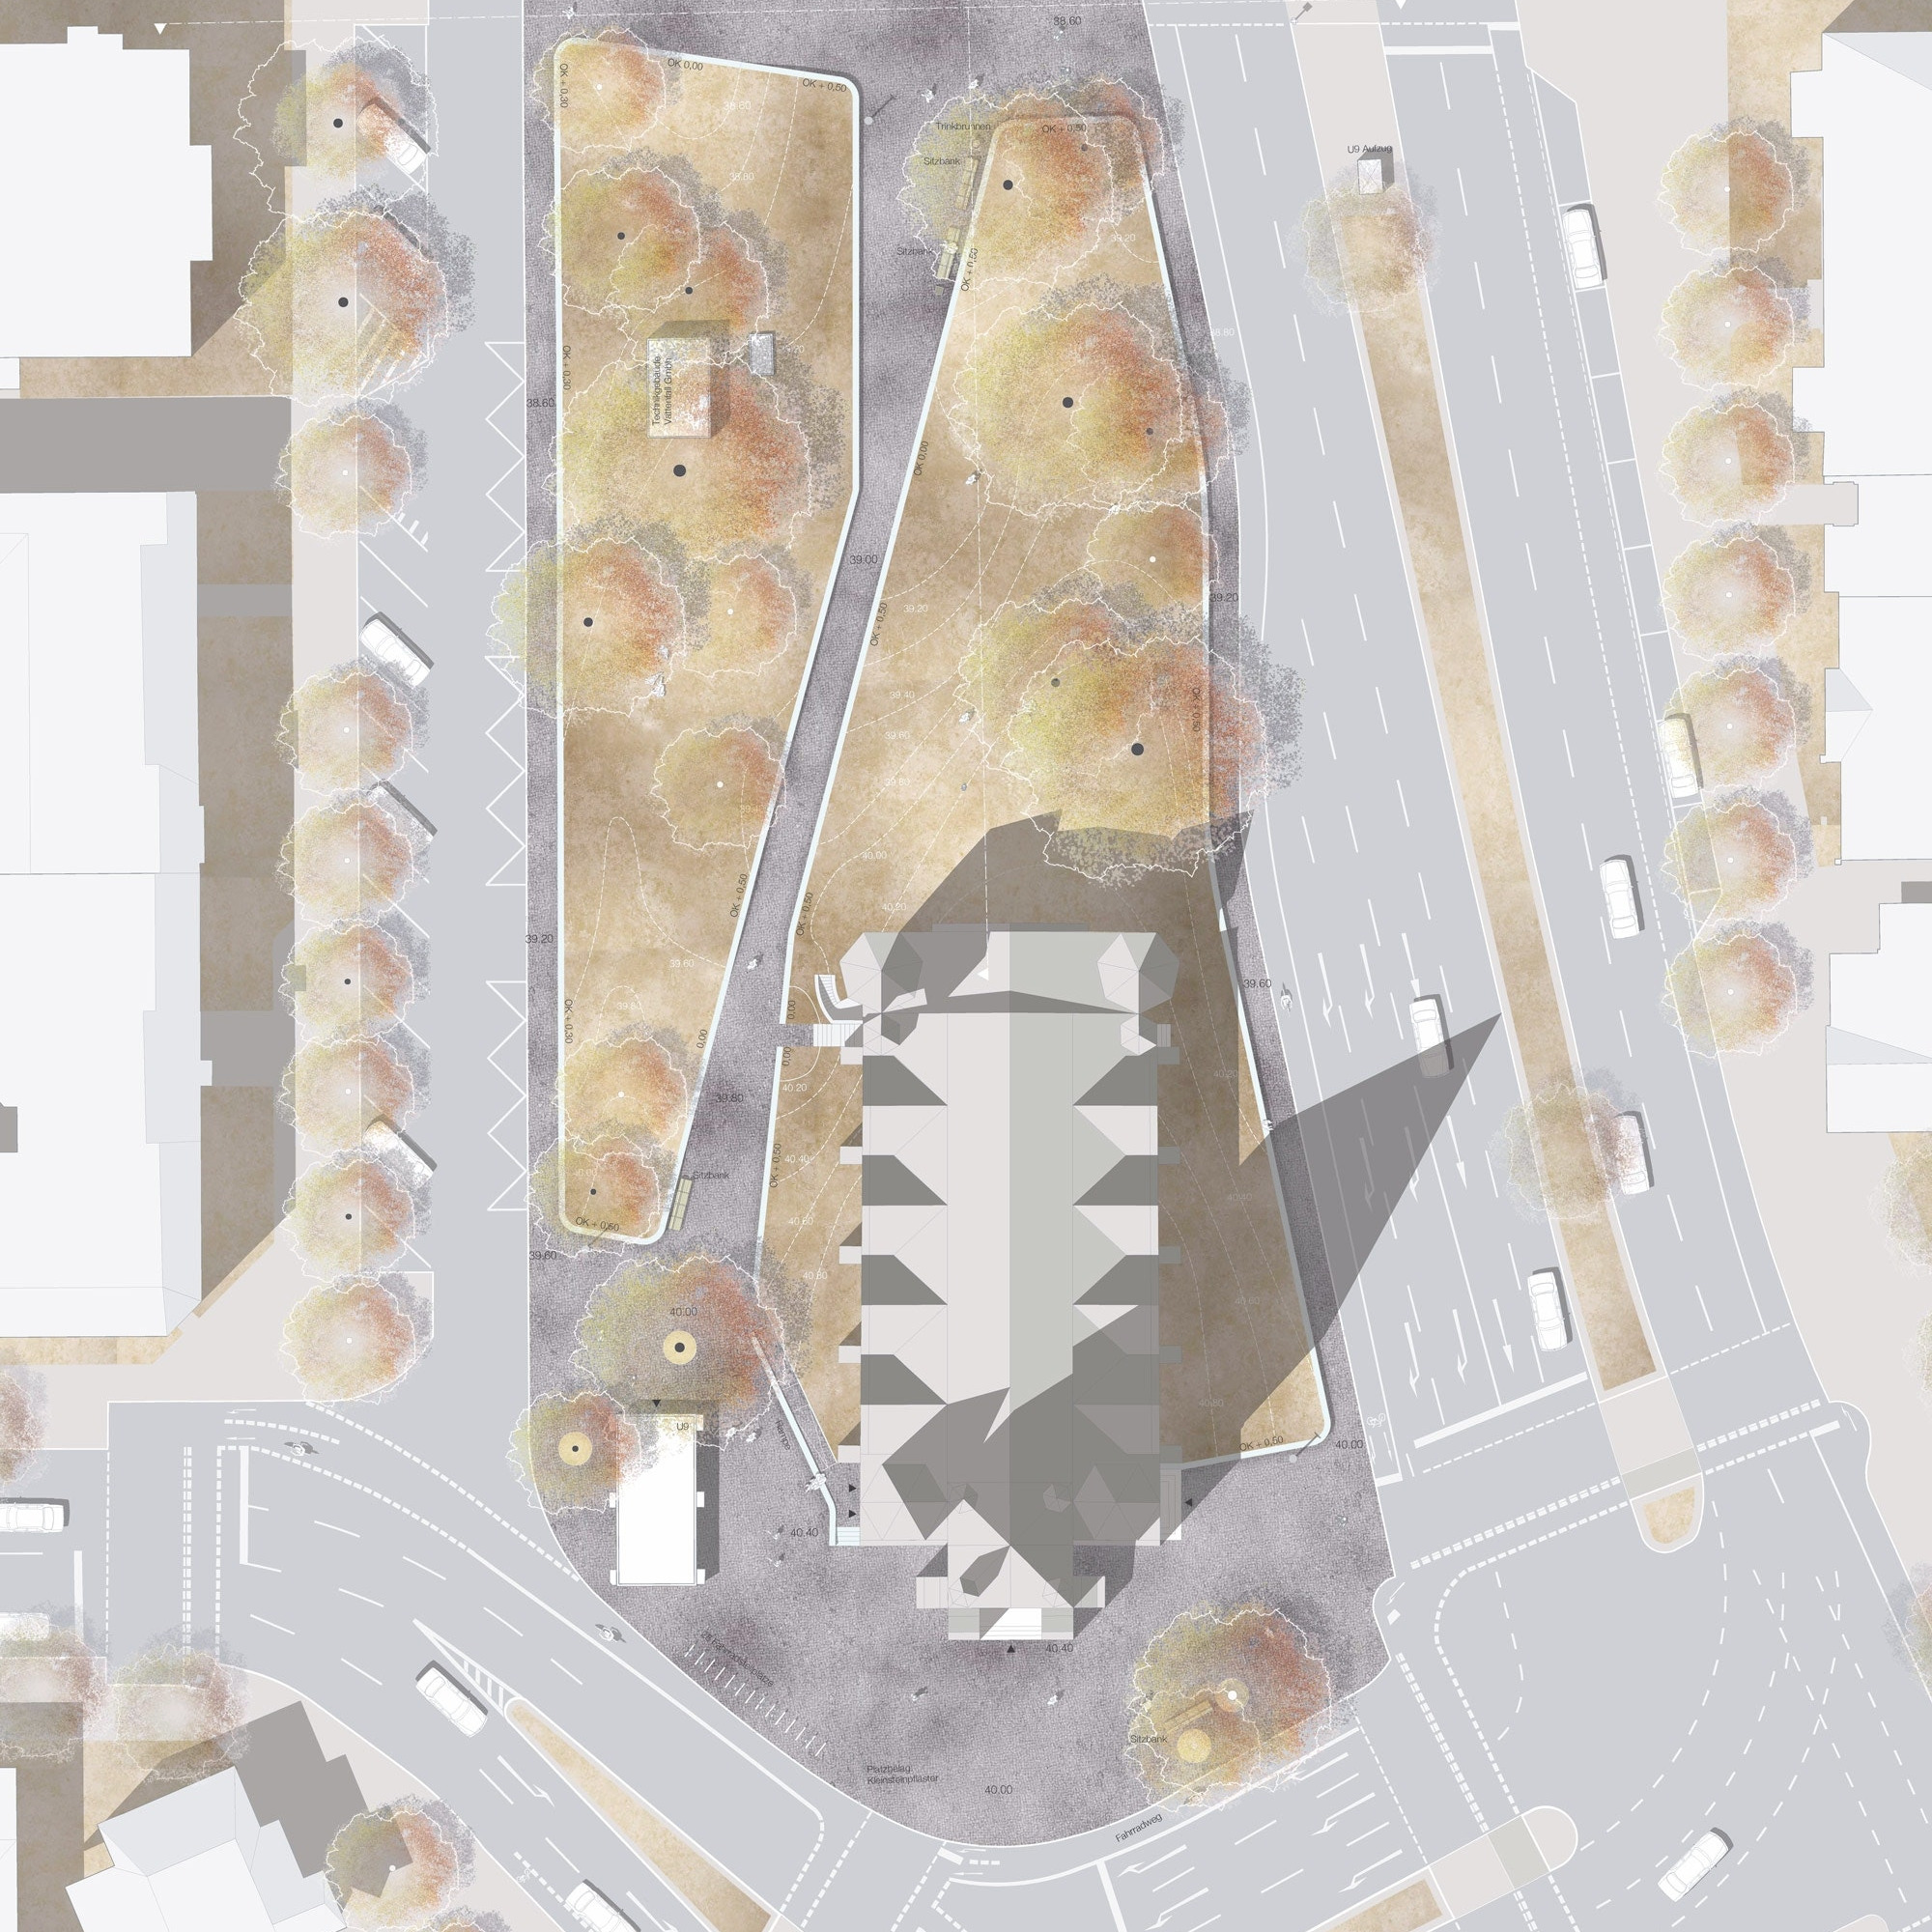 Freiraumplanung Friedrich-Wilhelm-Platz © METTLER Landschaftsarchitektur, CH-Gossau und Berlin